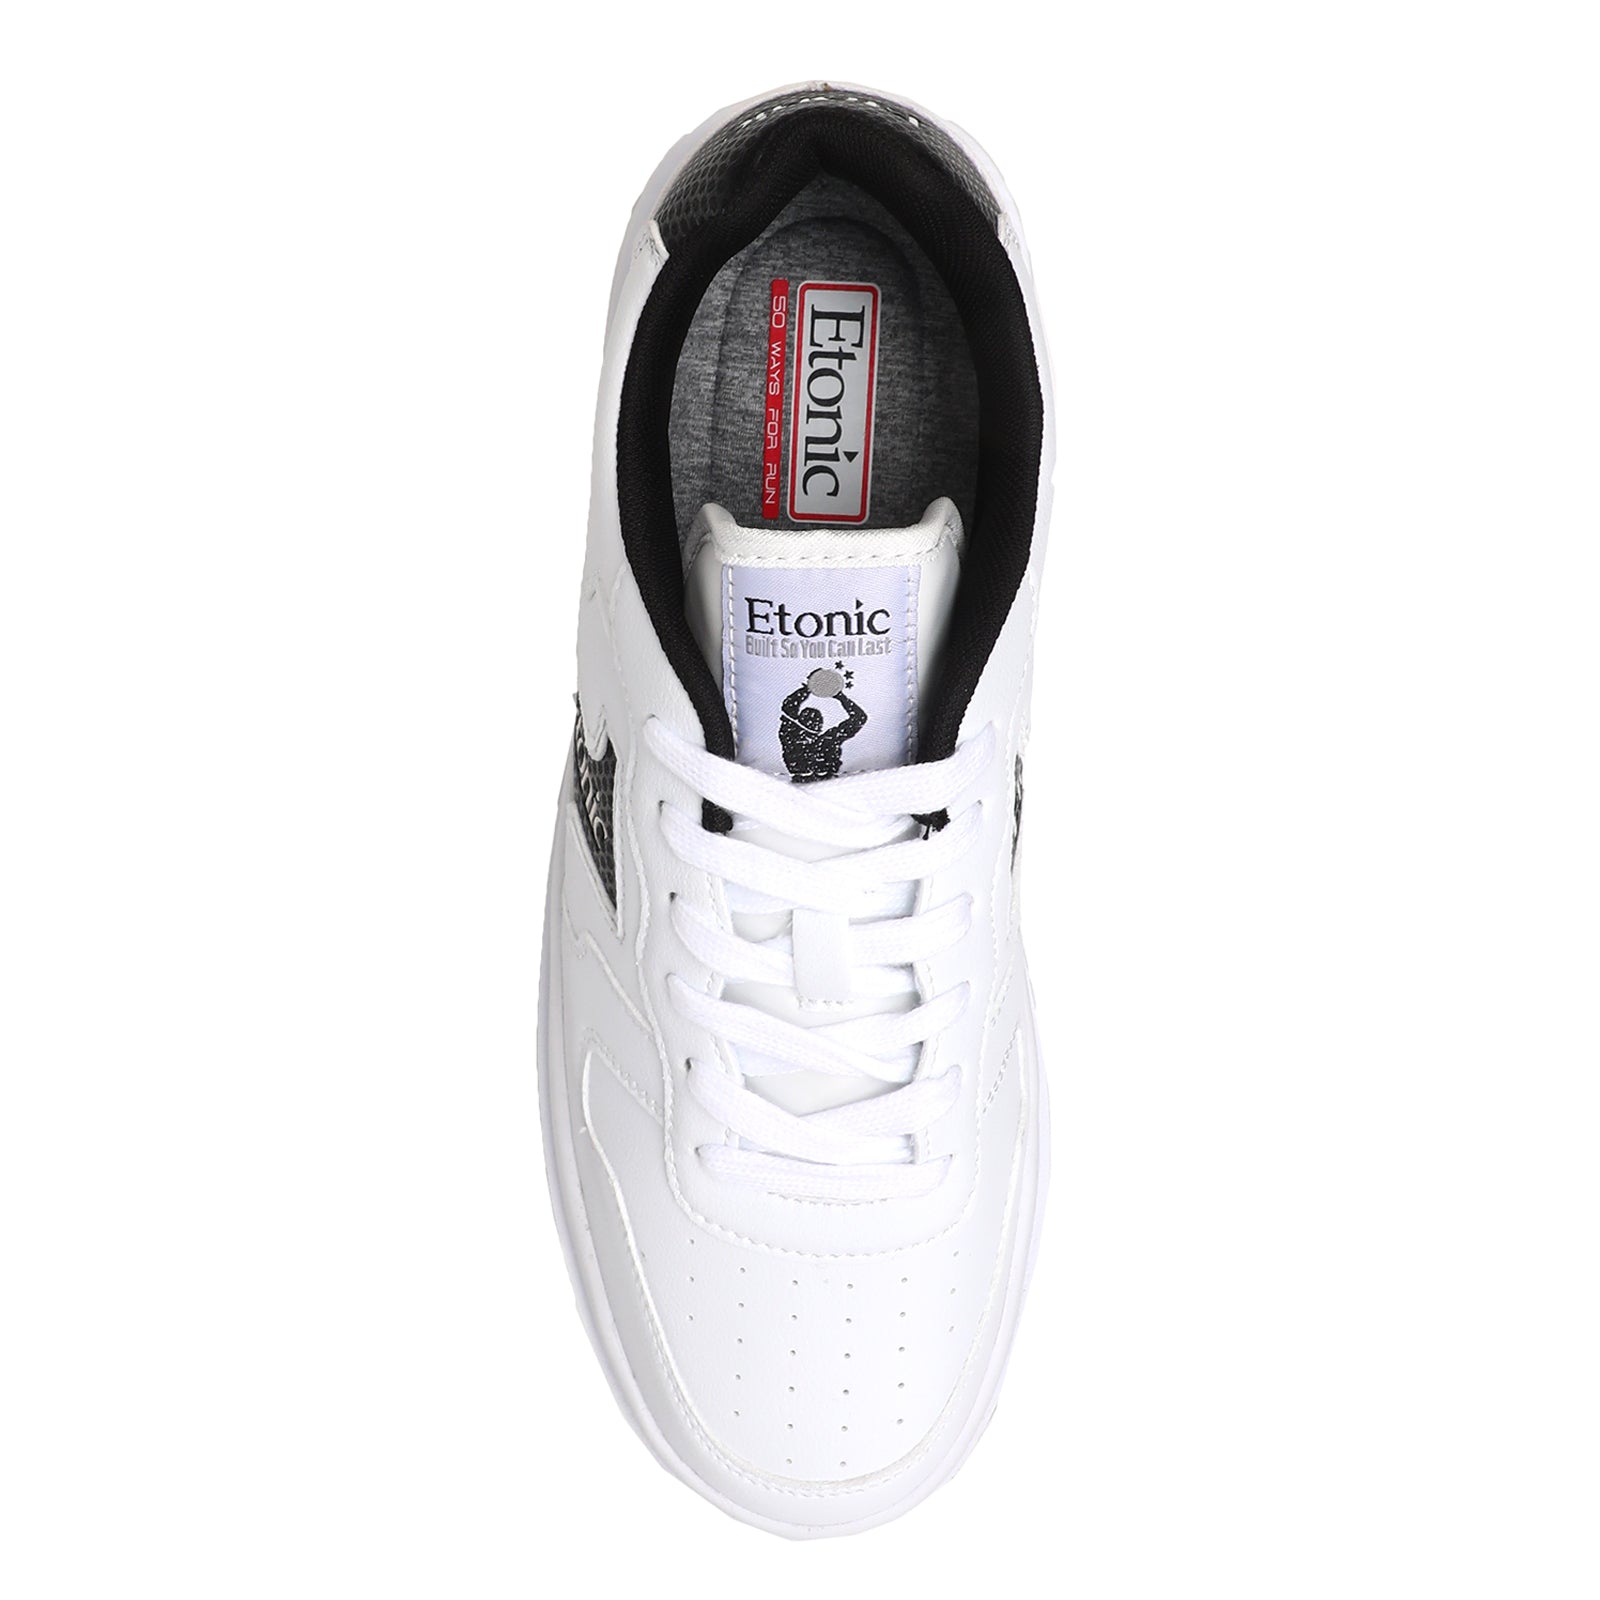 Etonic Sneakers uomo Basket LTH white/black - Etonic